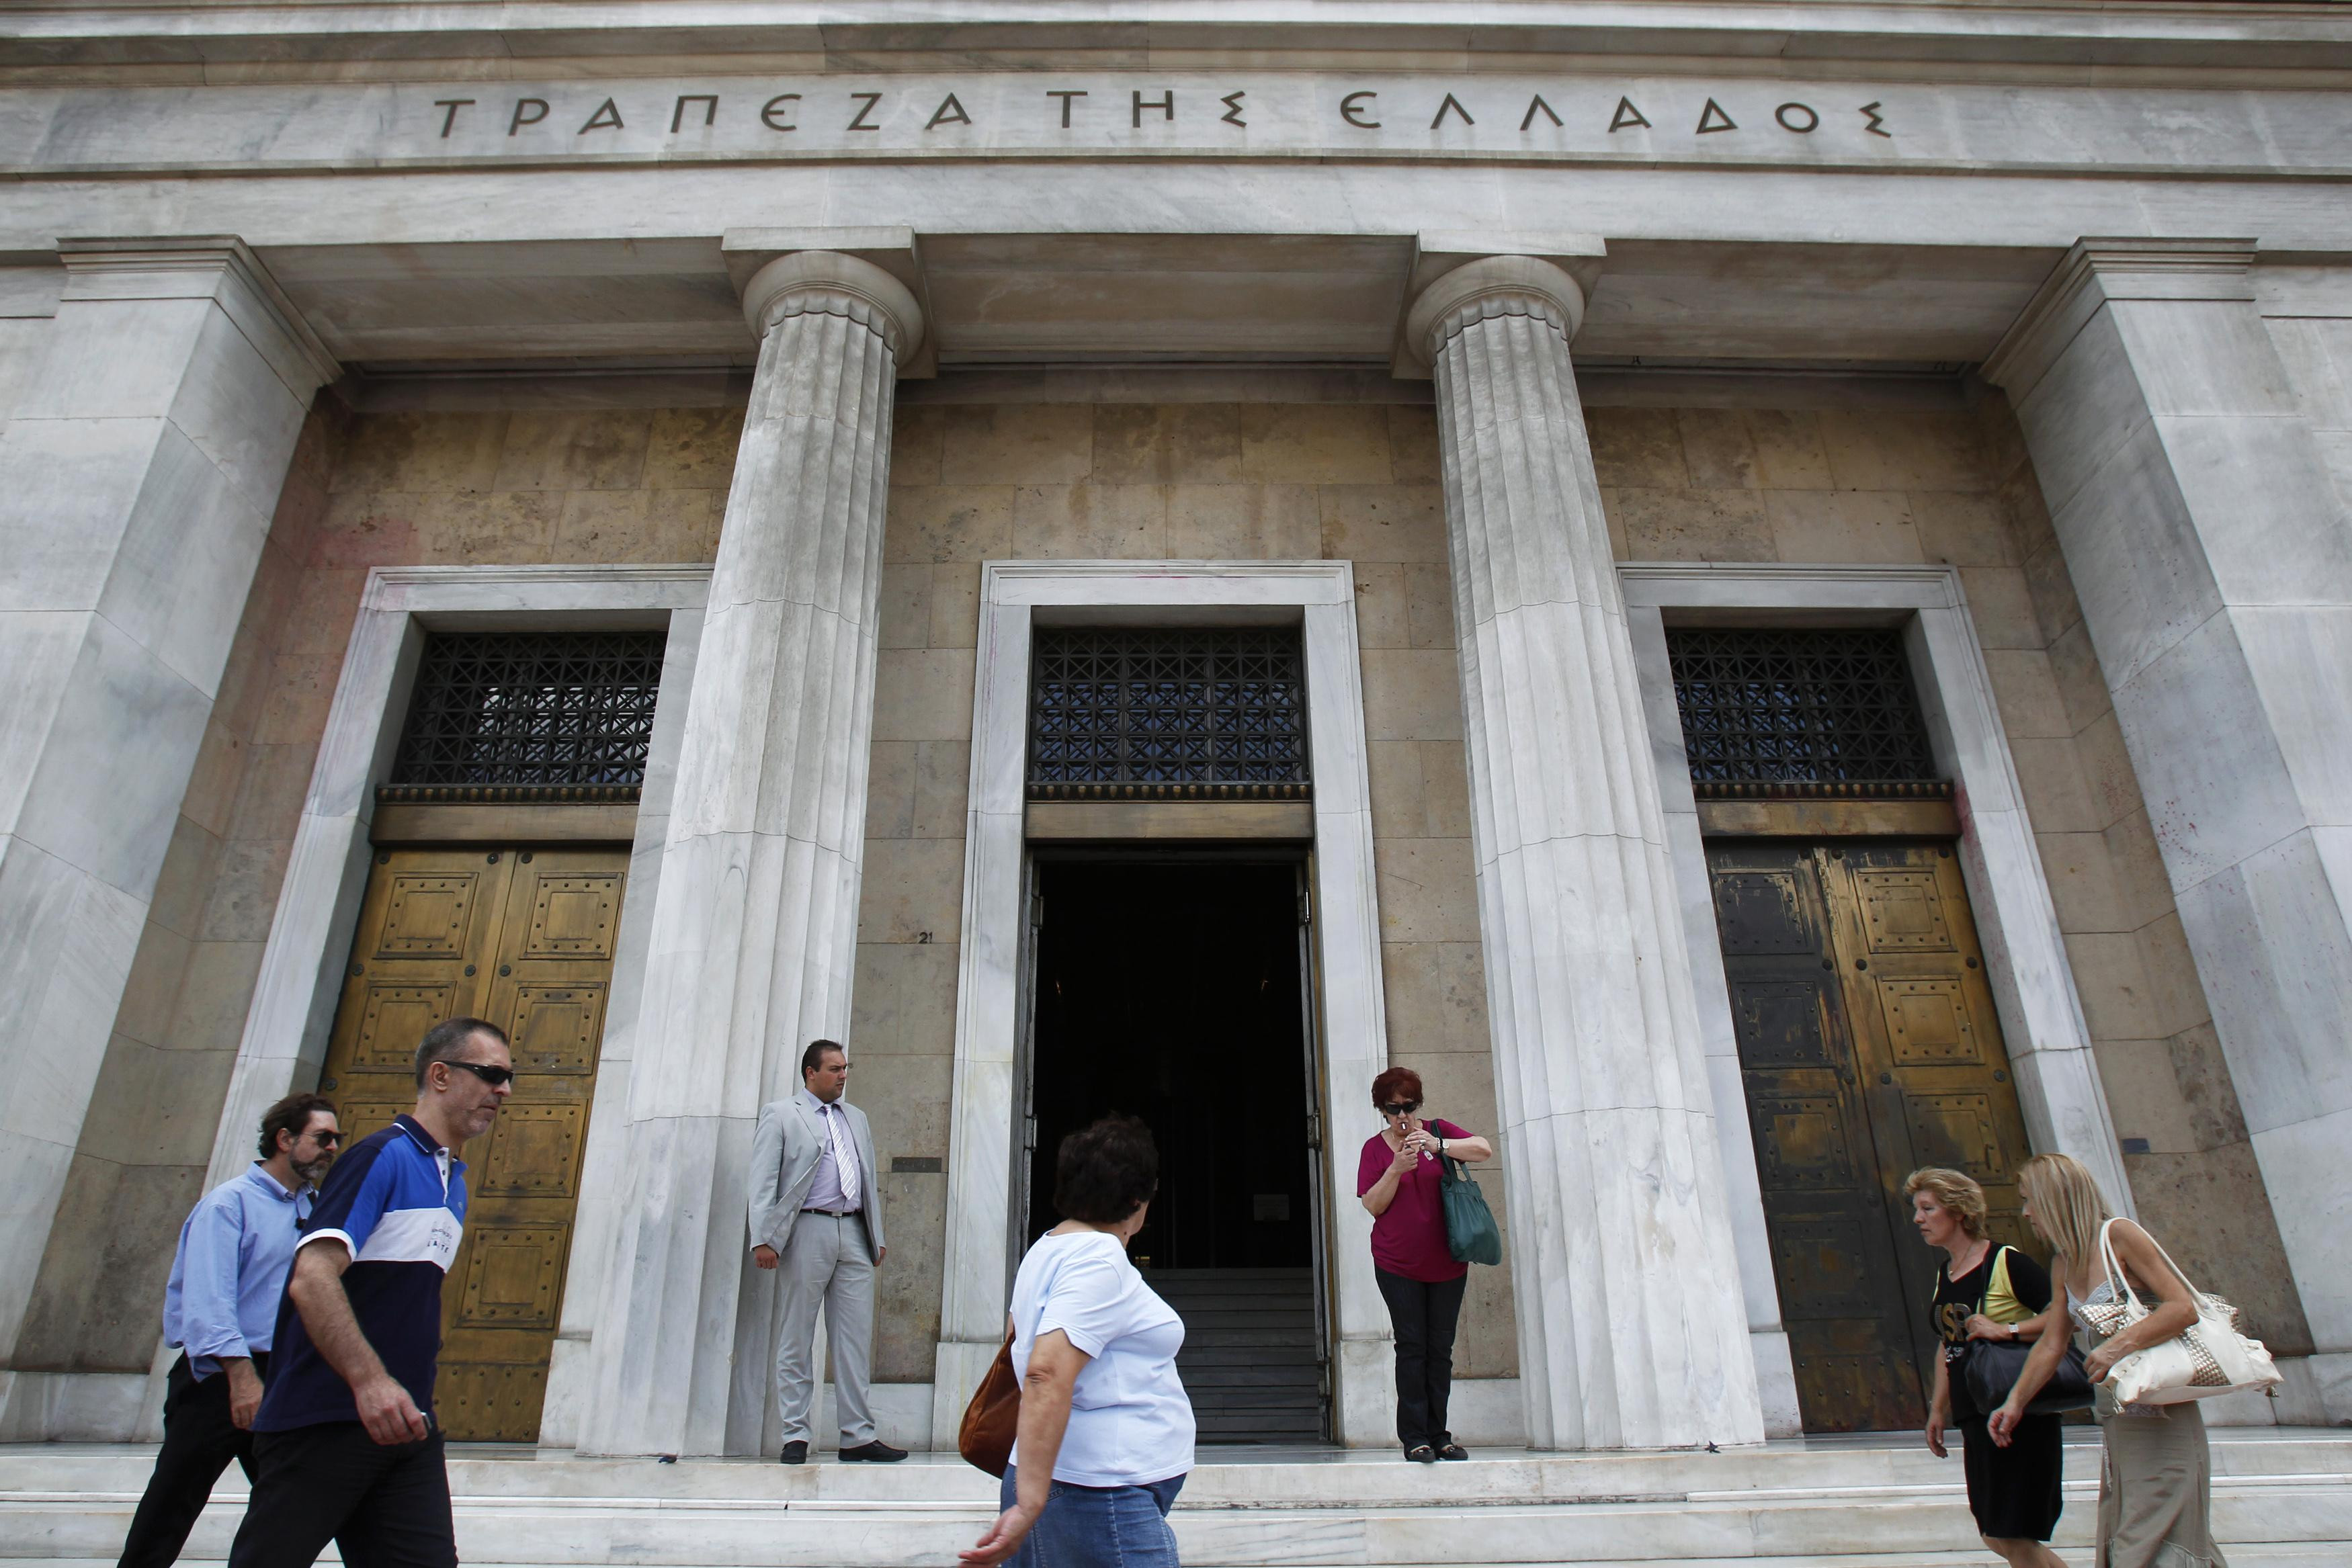 Κατά 1,1 δισ. ευρώ μειώθηκε το όριο του ELA για τις ελληνικές τράπεζες